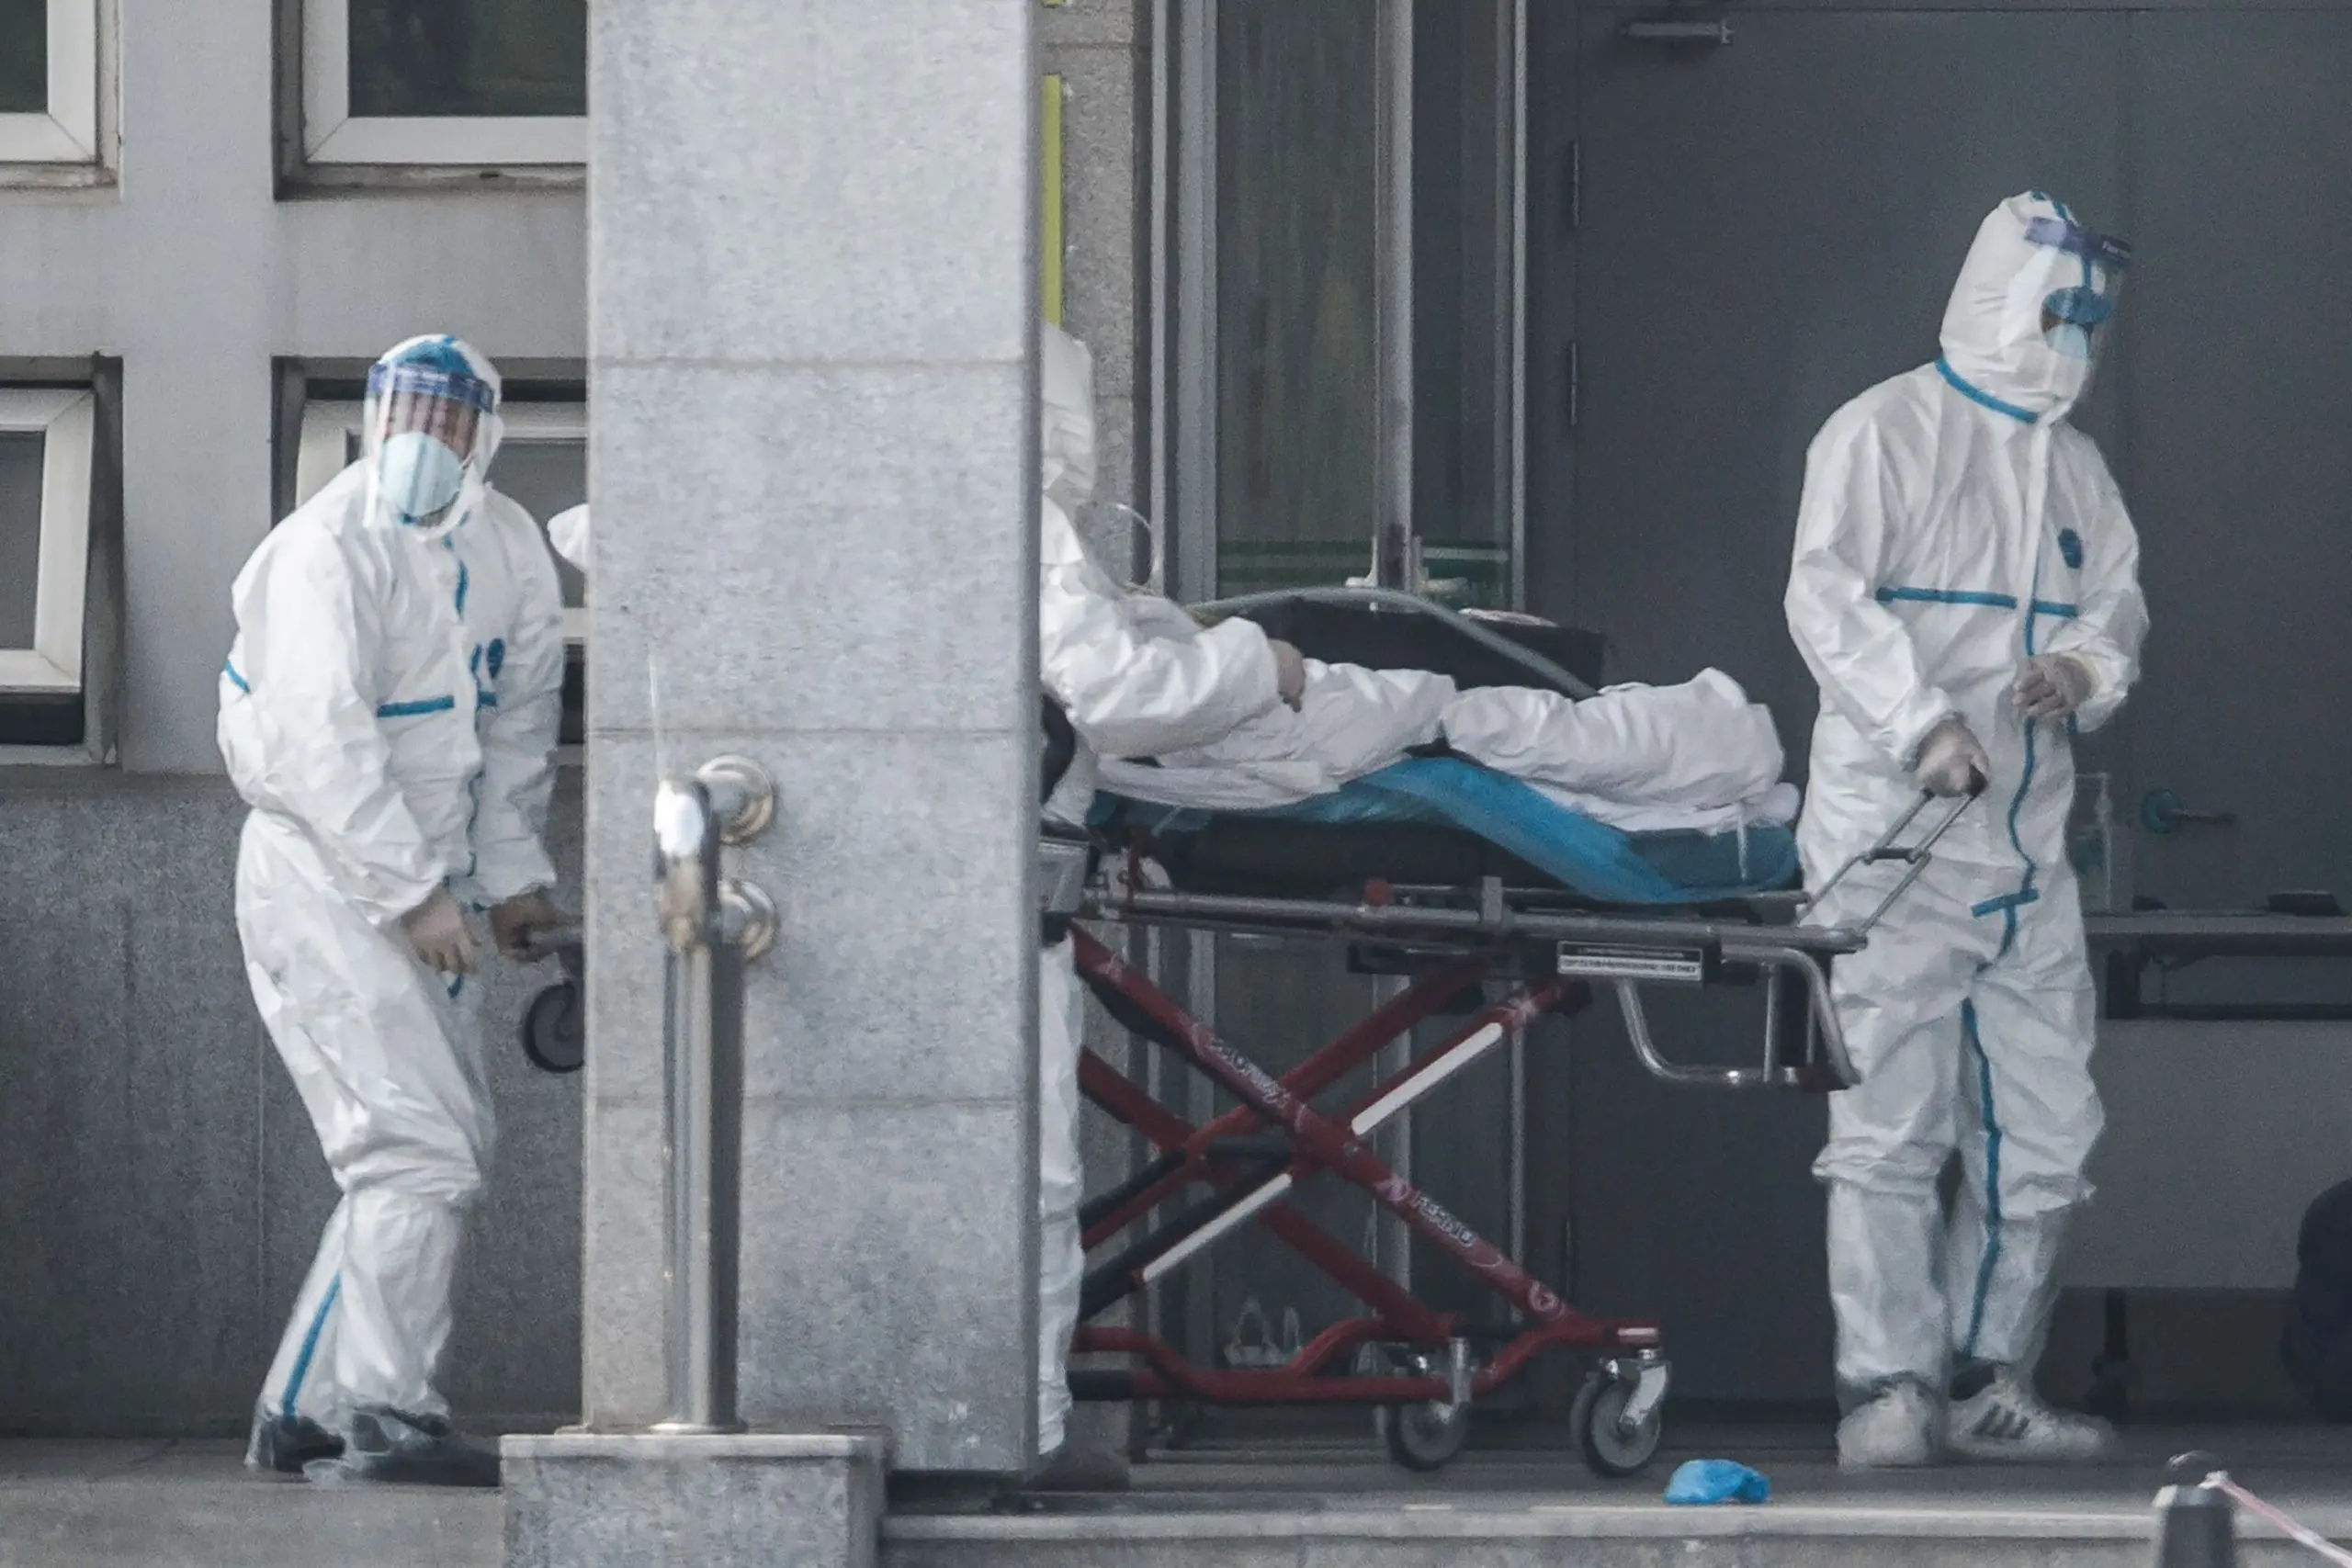 صحيفة بريطانية: أمريكا والصين تتعاونان لإنتاج فيروس قاتل قد يؤدي إلى وباء